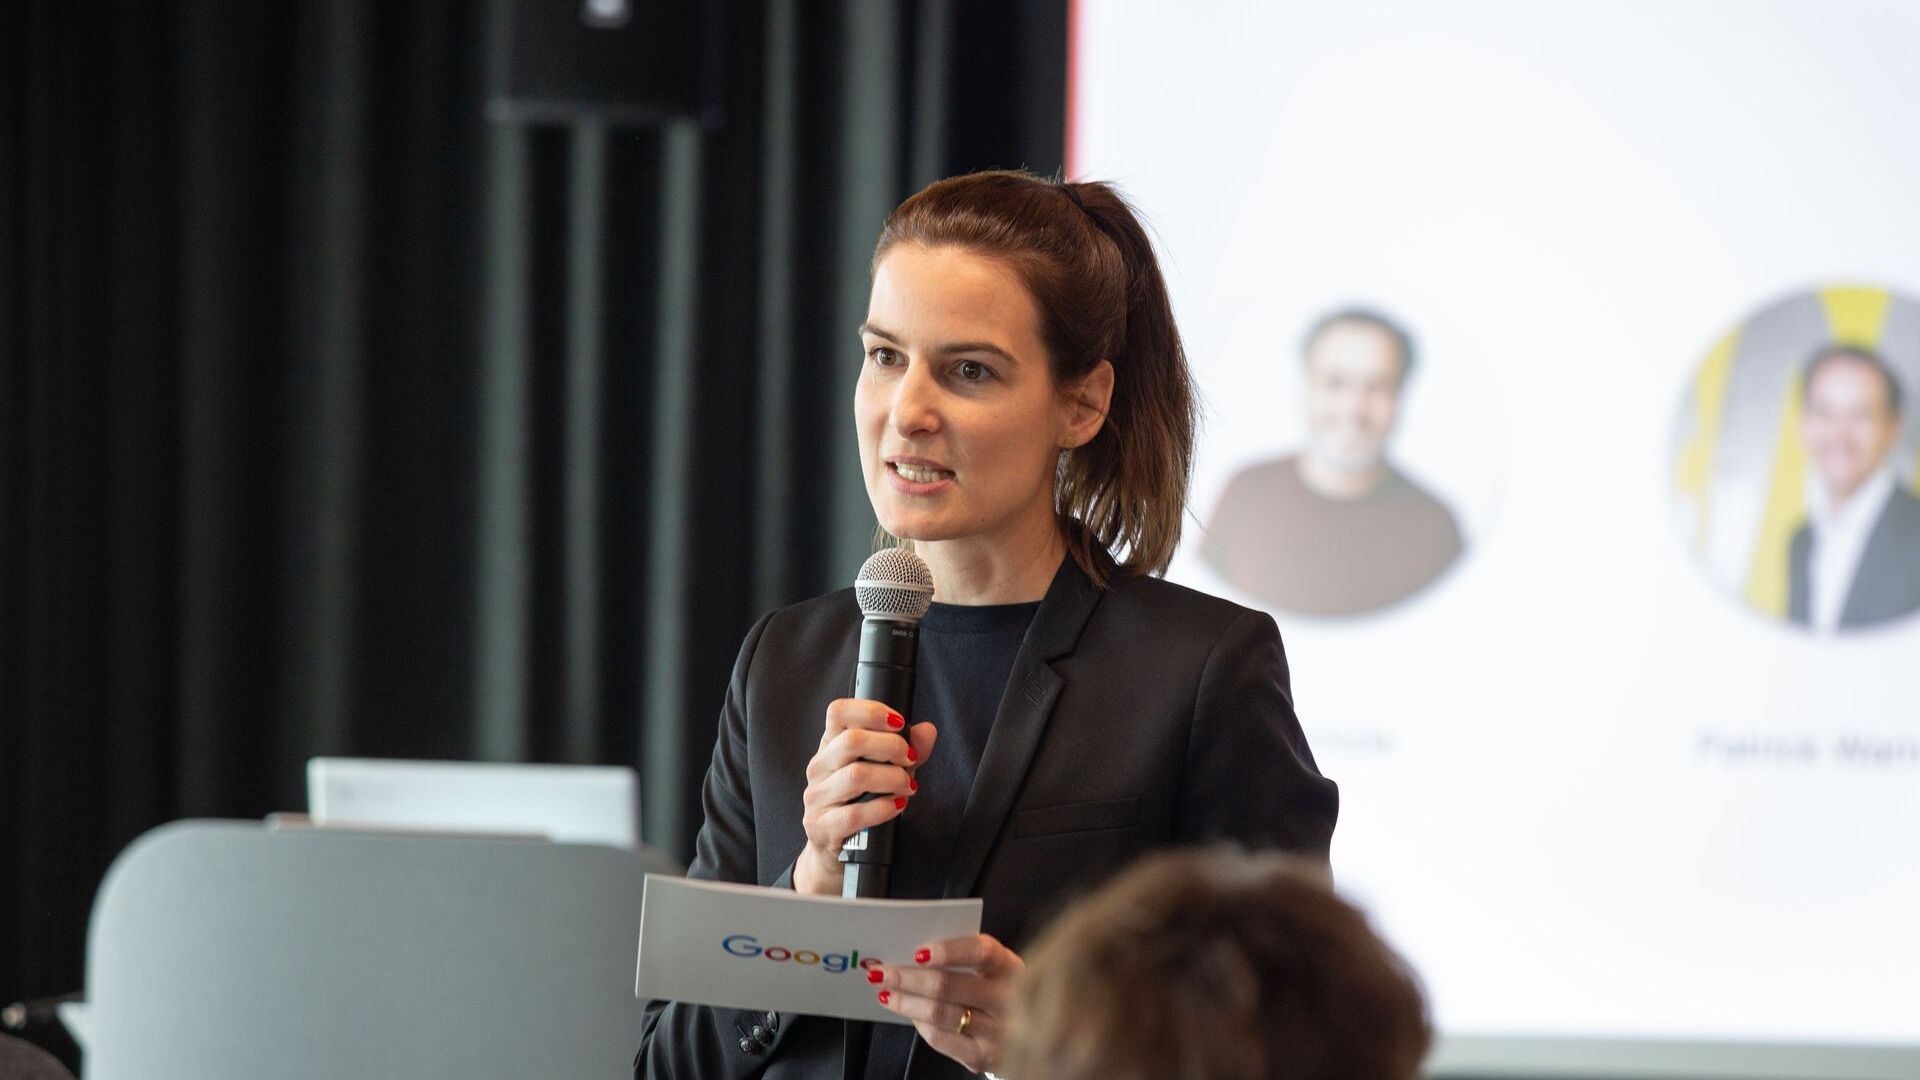 Pia De Carli, zespół medialny Google Switzerland, wzięła udział w oficjalnej inauguracji nowego kampusu Europaallee Google w Zurychu 27 czerwca 2022 r.